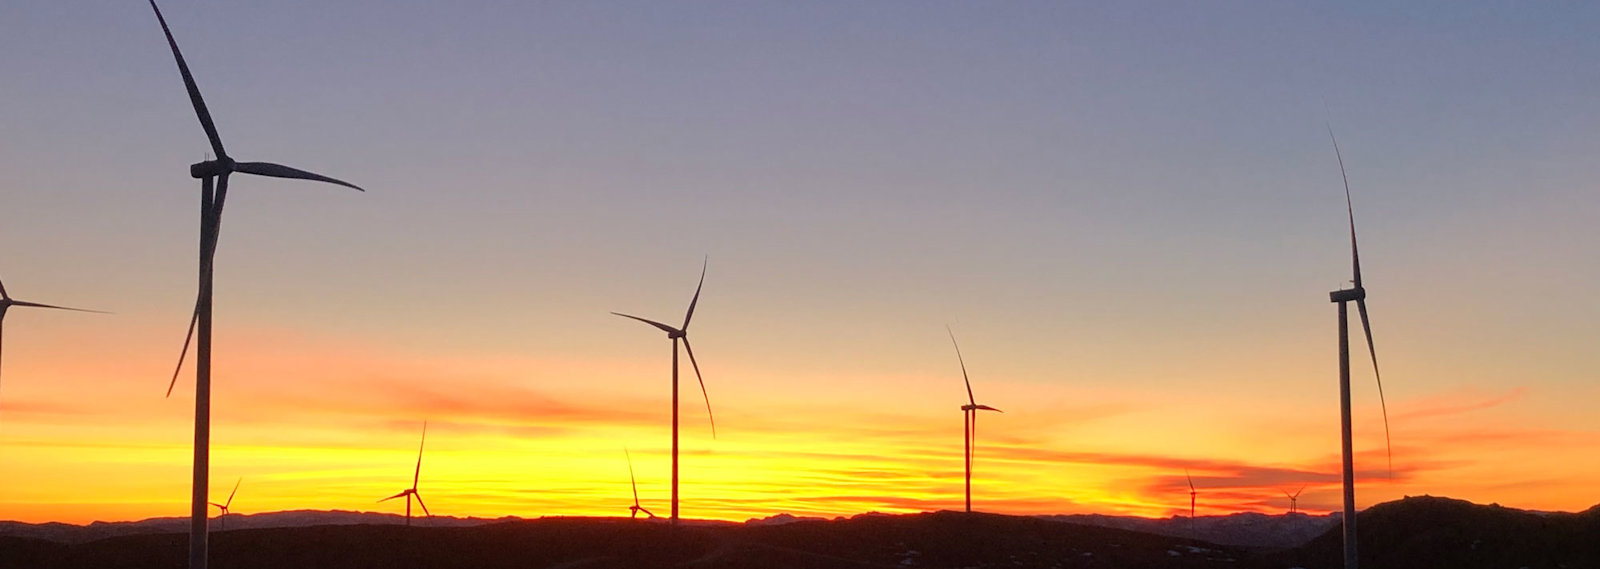 Windmills at Tonstad wind farm in Norway